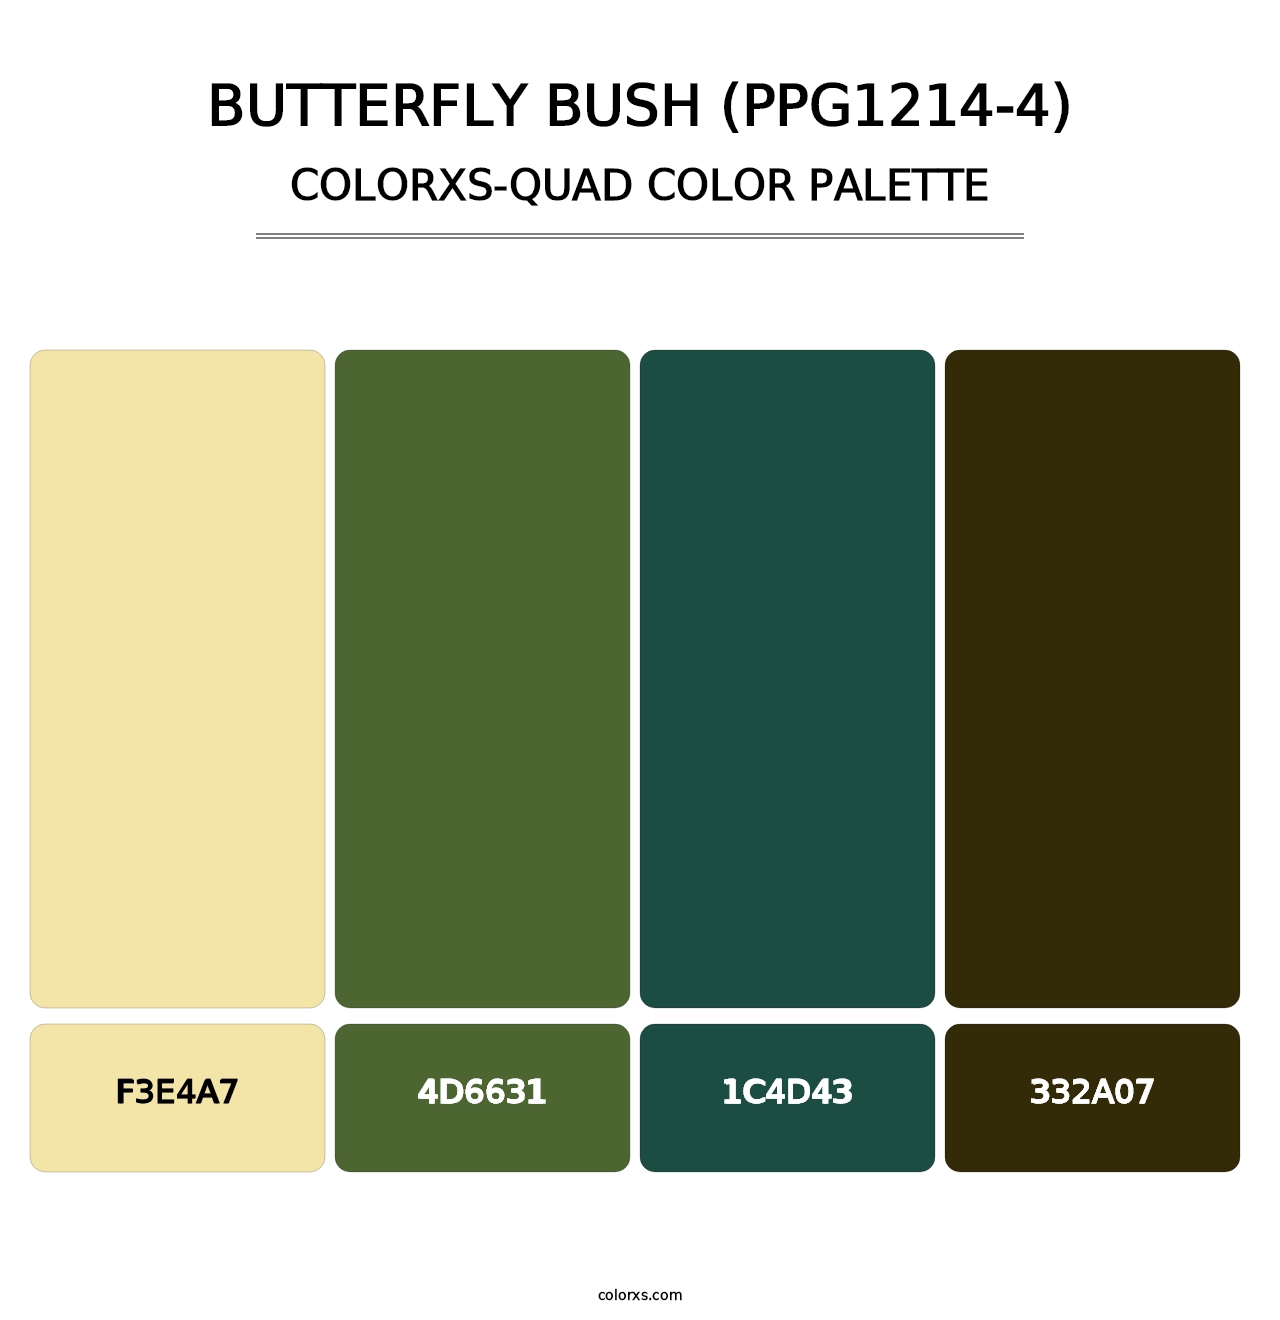 Butterfly Bush (PPG1214-4) - Colorxs Quad Palette